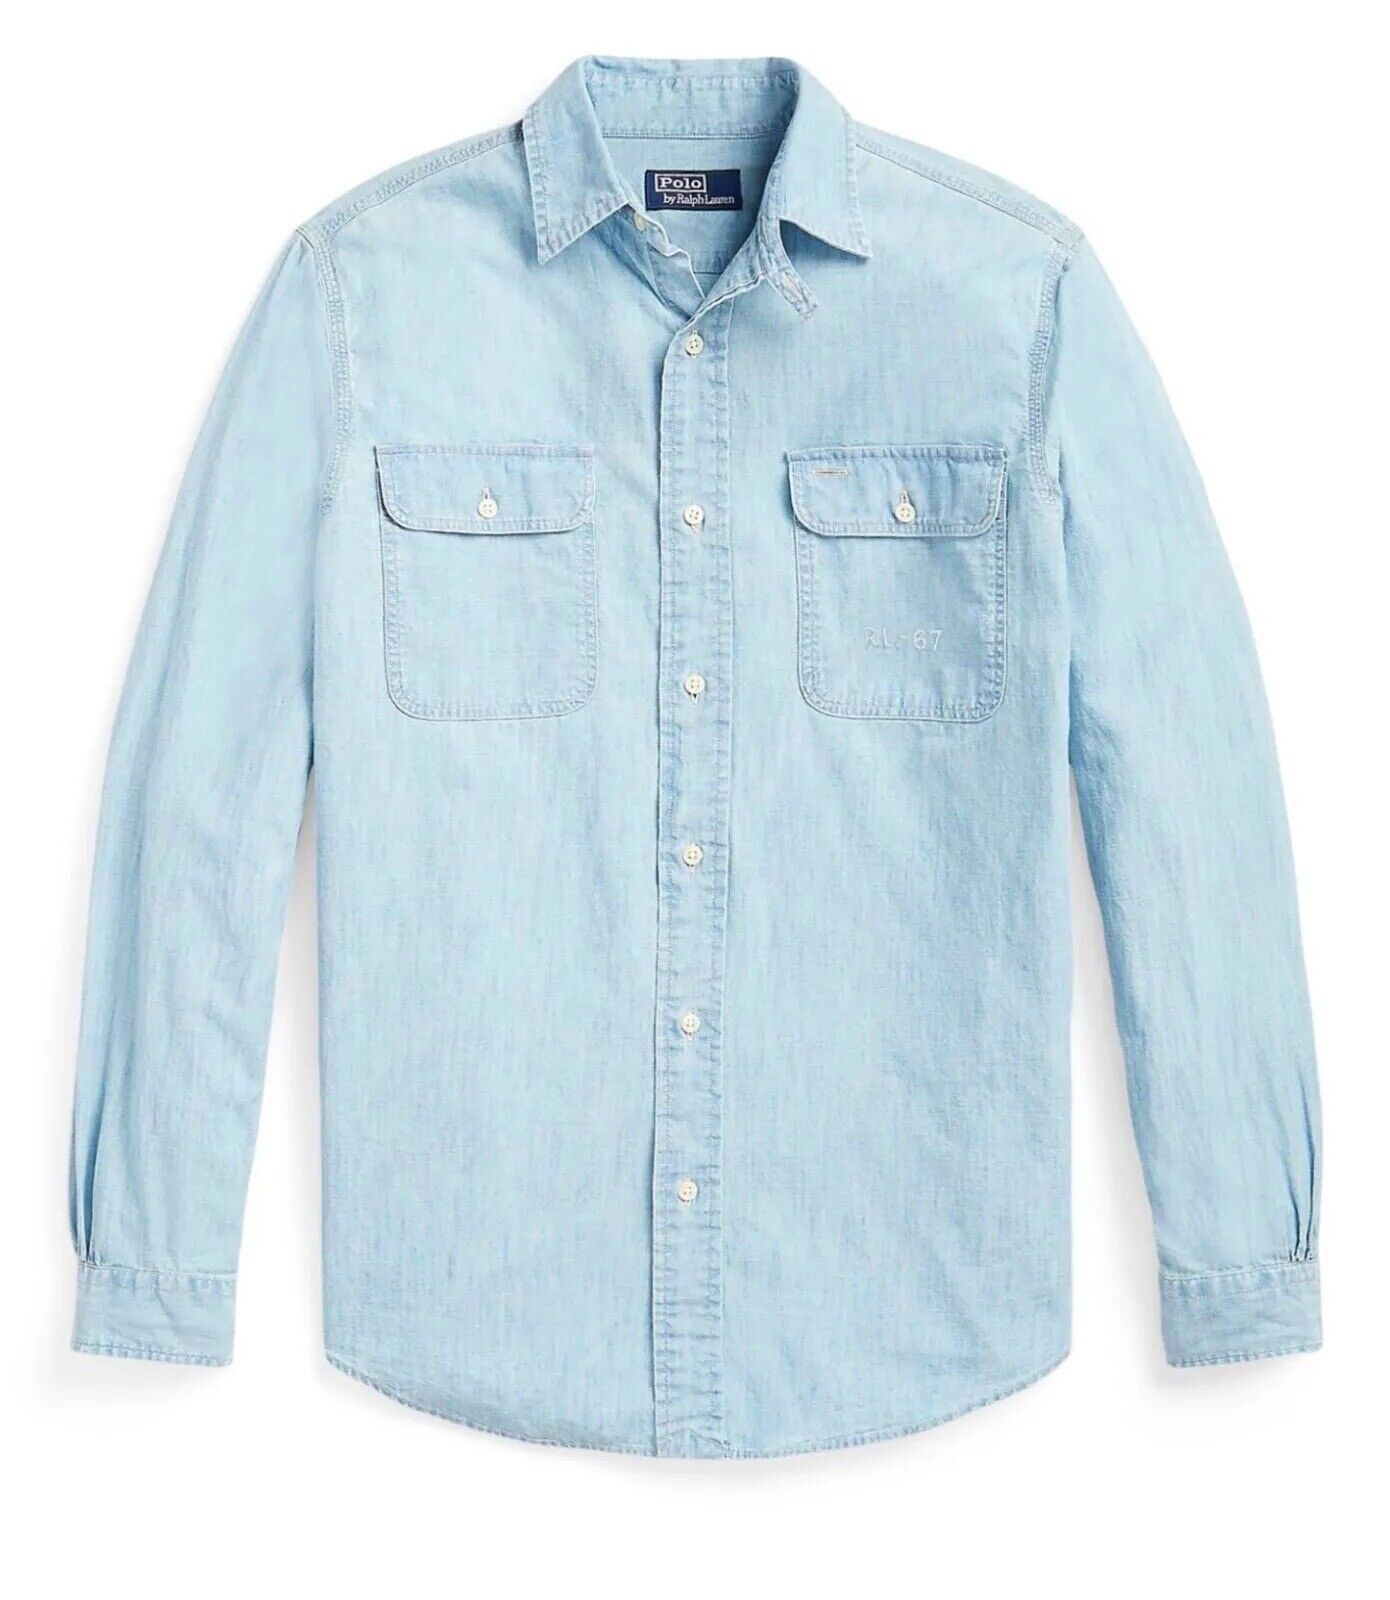 Neu mit Etikett: 148 $ Polo Ralph Lauren Herren-Button-Down-Baumwollhemd in Blau XL